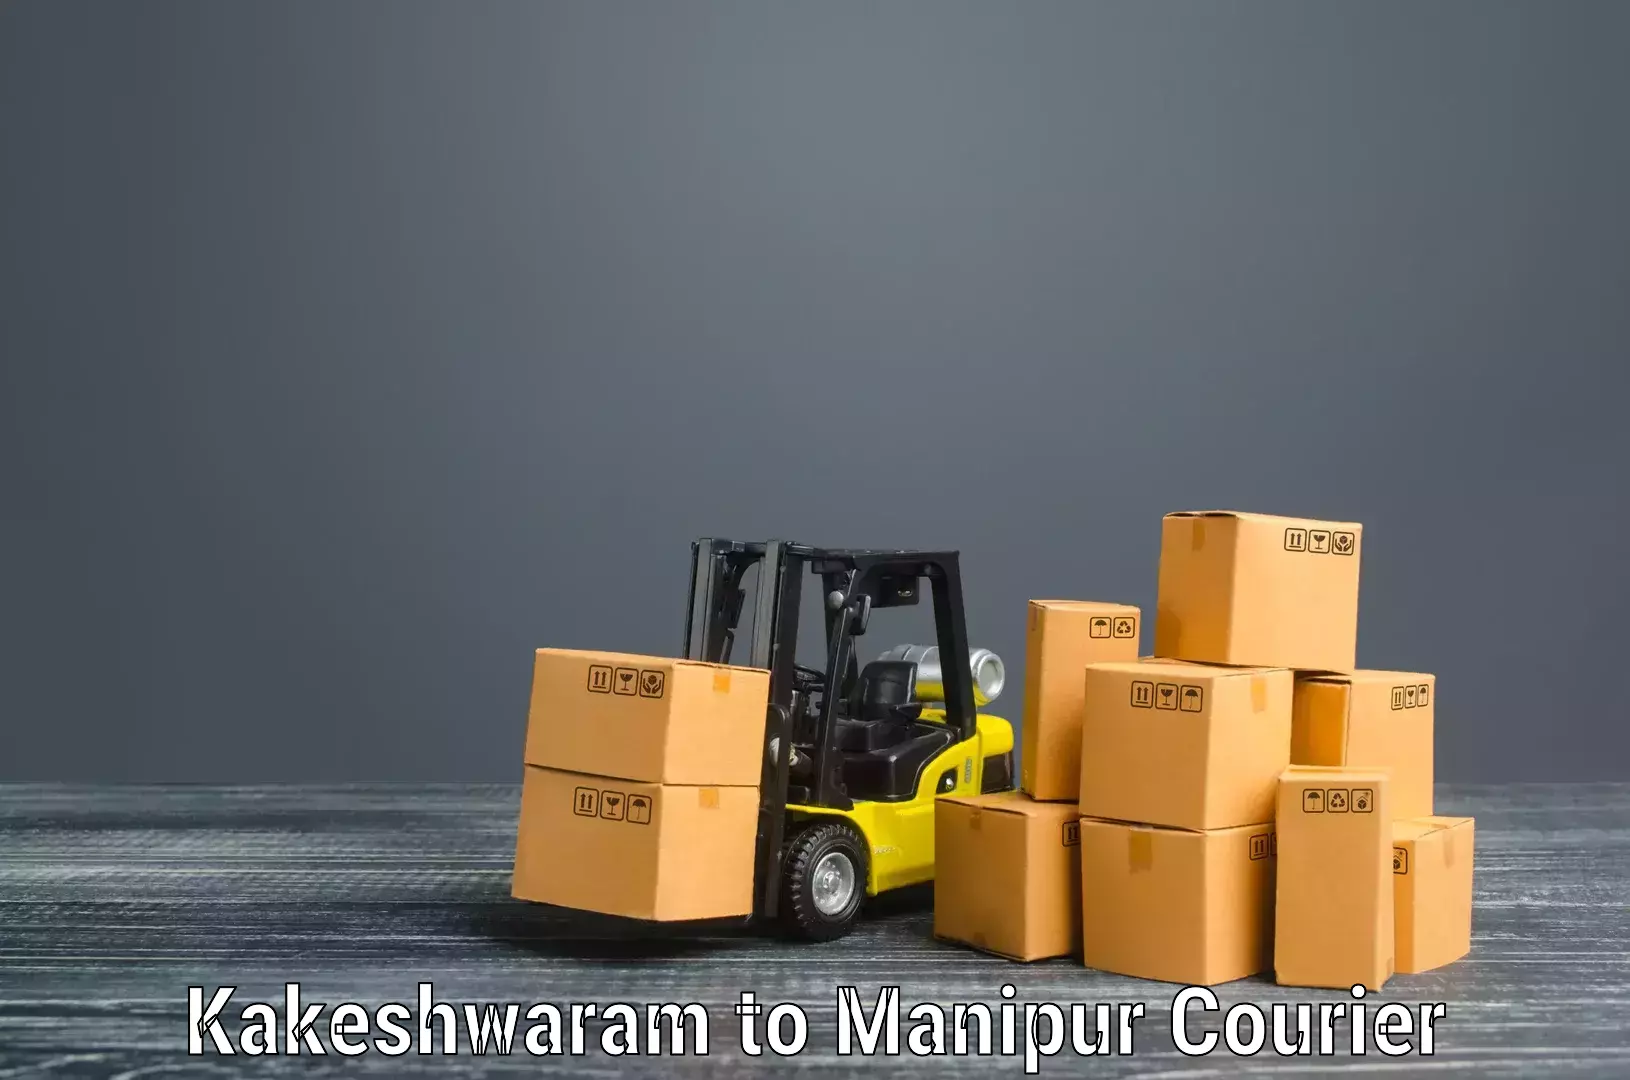 Furniture moving assistance in Kakeshwaram to Moirang